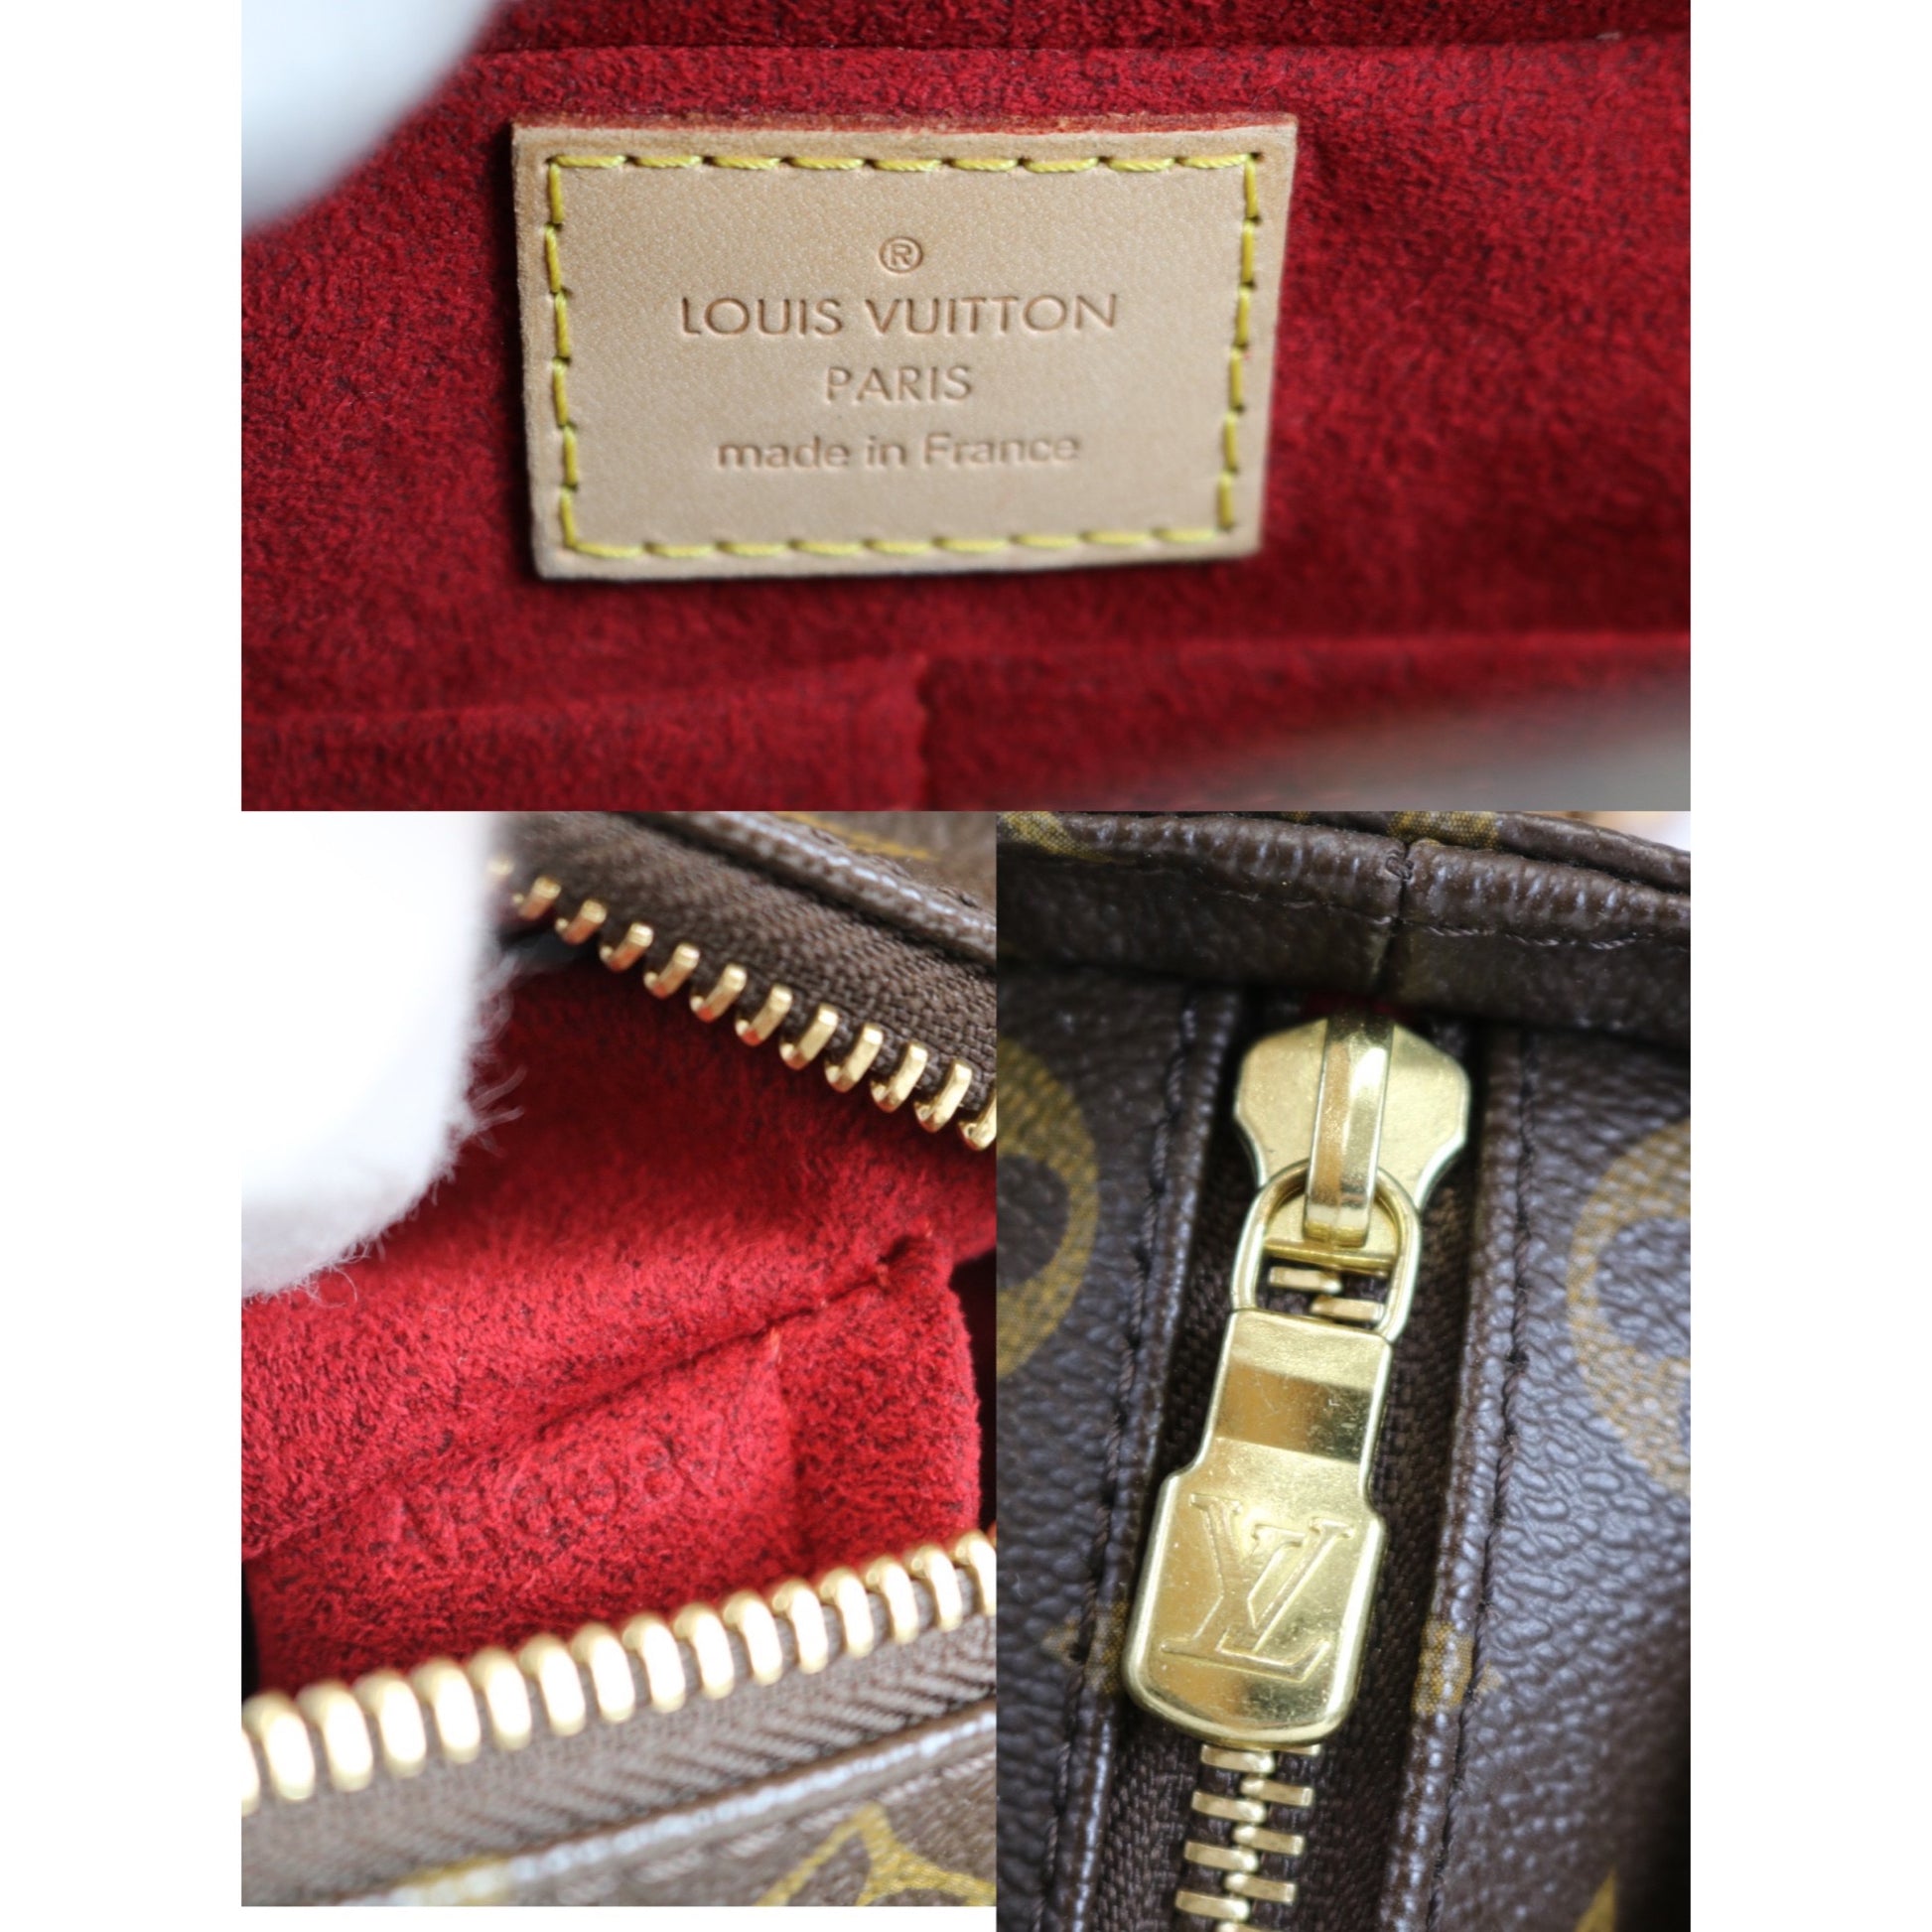 At Auction: Louis Vuitton, LOUIS VUITTON MULTIPLI CITE MONOGRAM HANDBAG